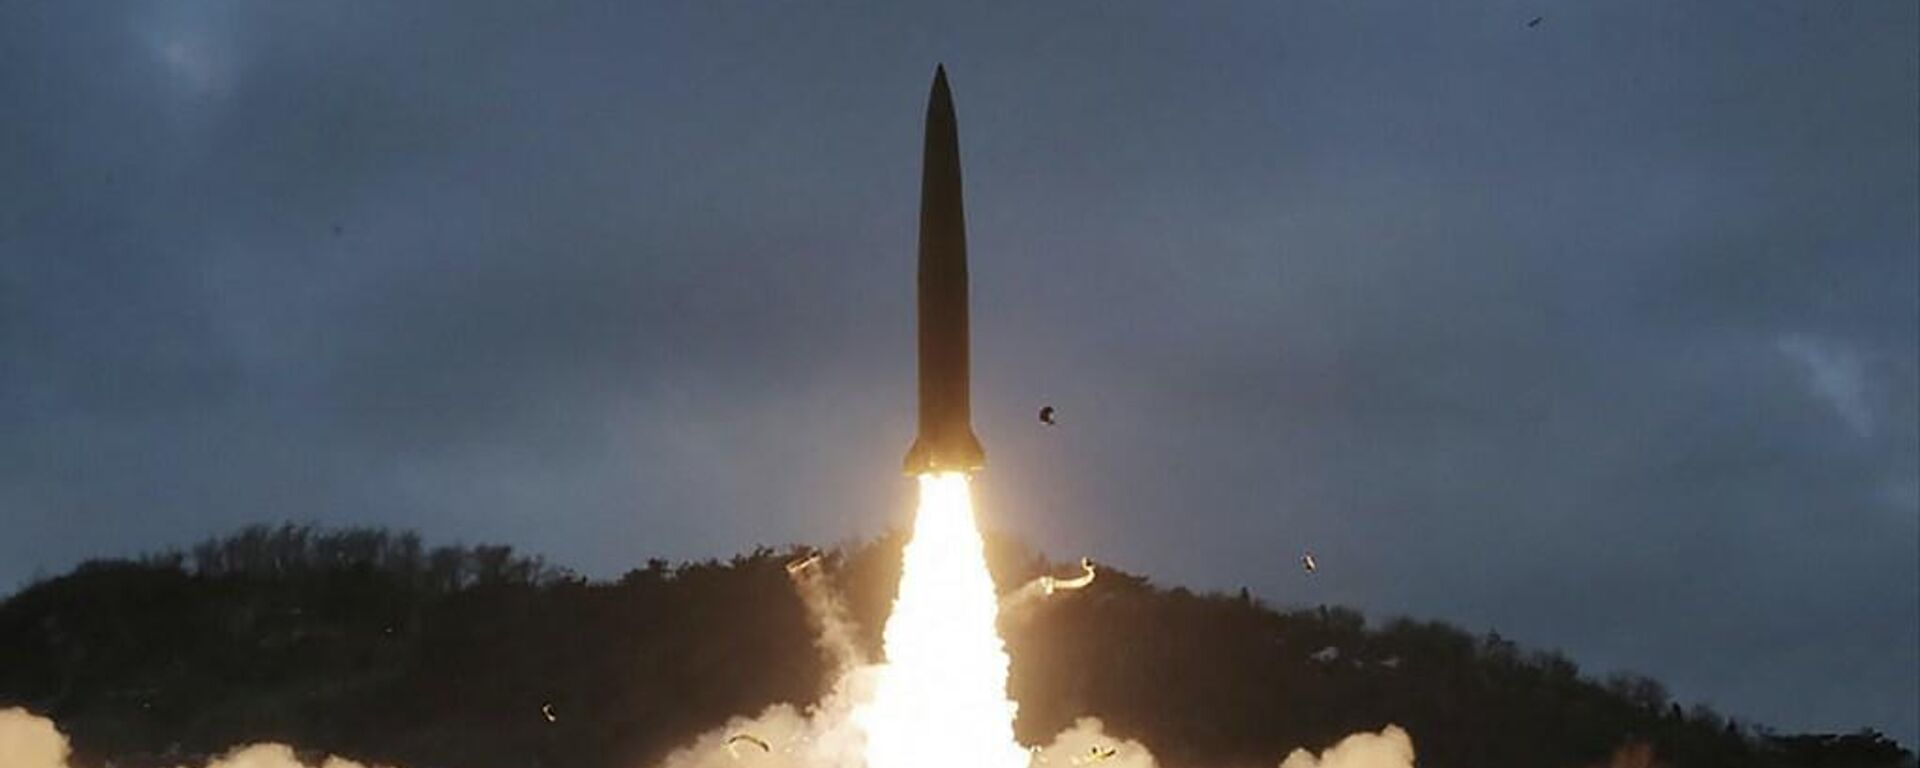 Un lanzamiento del misil norcoreano (imagen referencial) - Sputnik Mundo, 1920, 27.02.2022